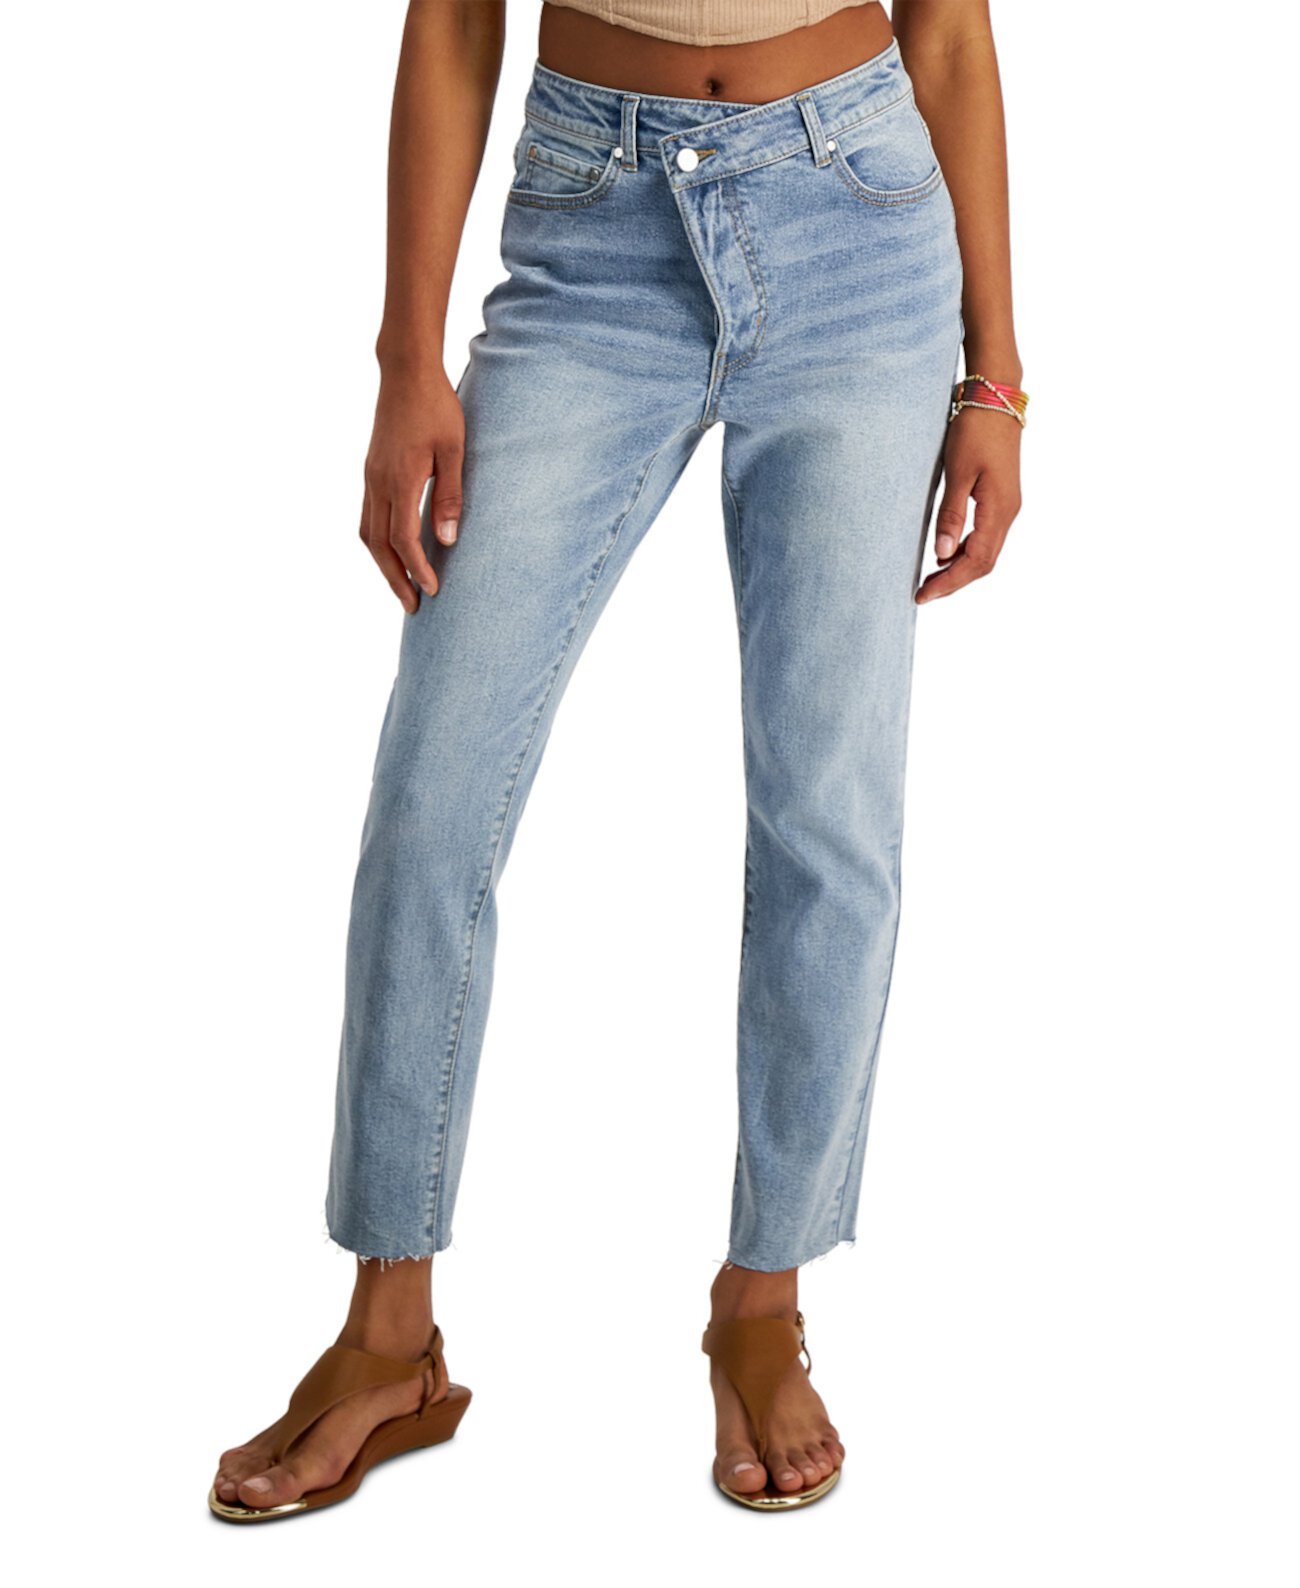 Рваные асимметричные прямые джинсы для юниоров Tinseltown